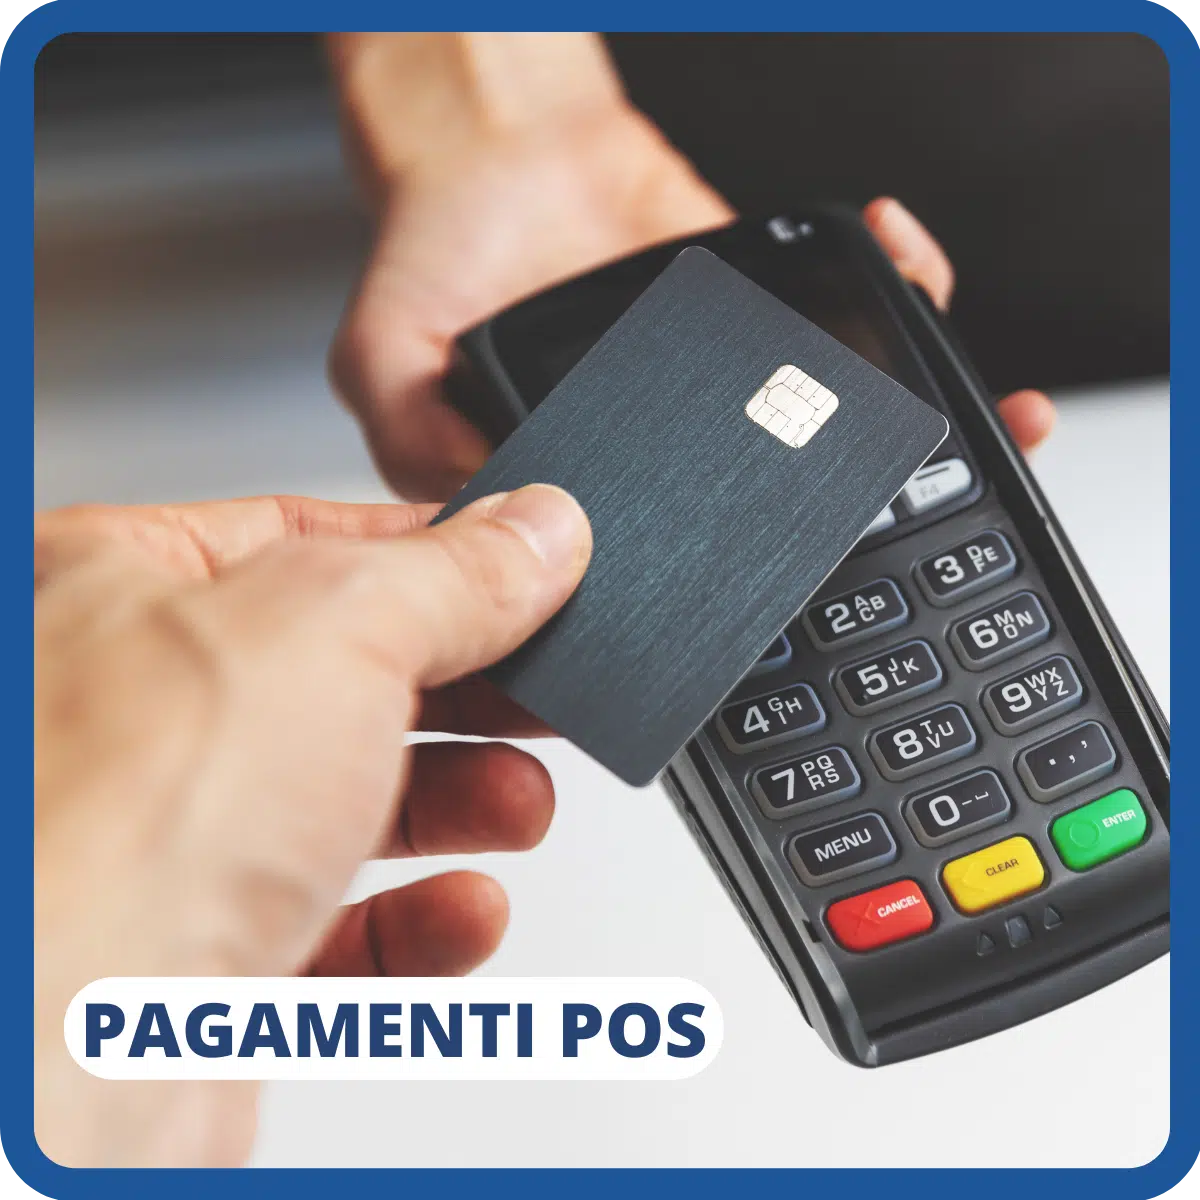 Pagamento pos digitale bancomat carta di credito banche commercianti professionisti confartigianato